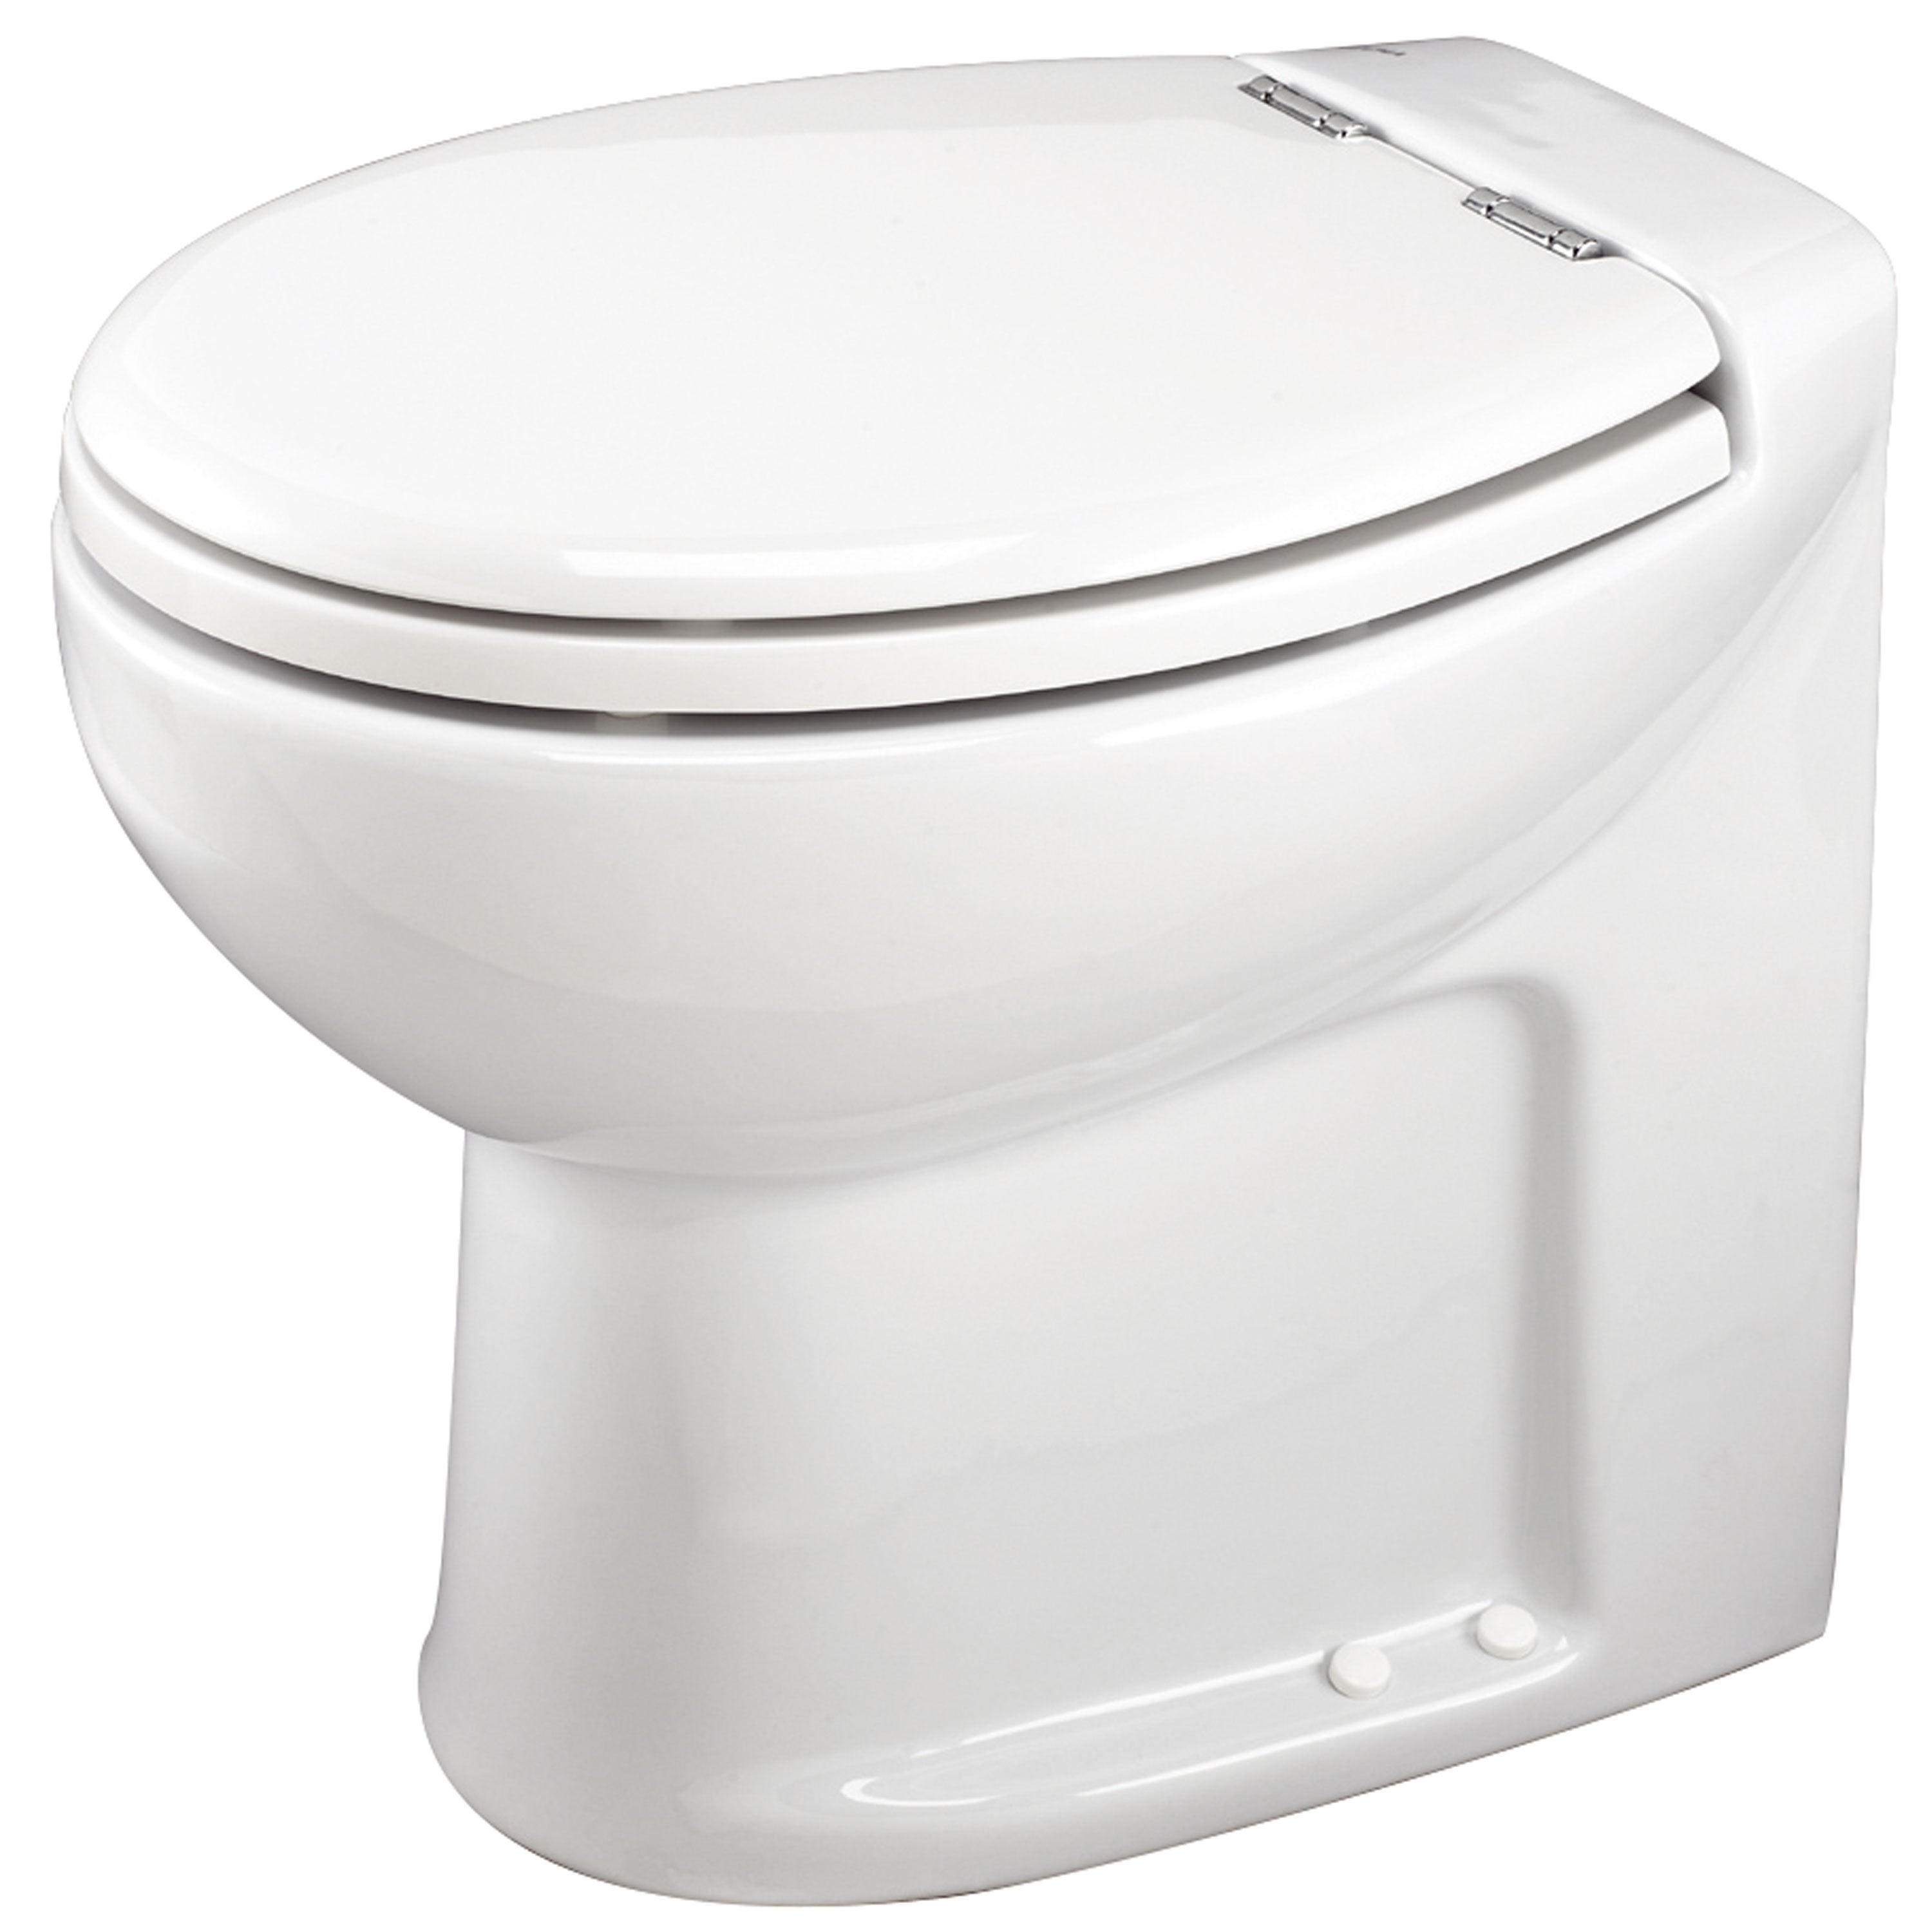 Thetford 38101 Tecma Silence Plus 2 Mode 12V RV Toilet with Electric Solenoid - High, White/Chrome